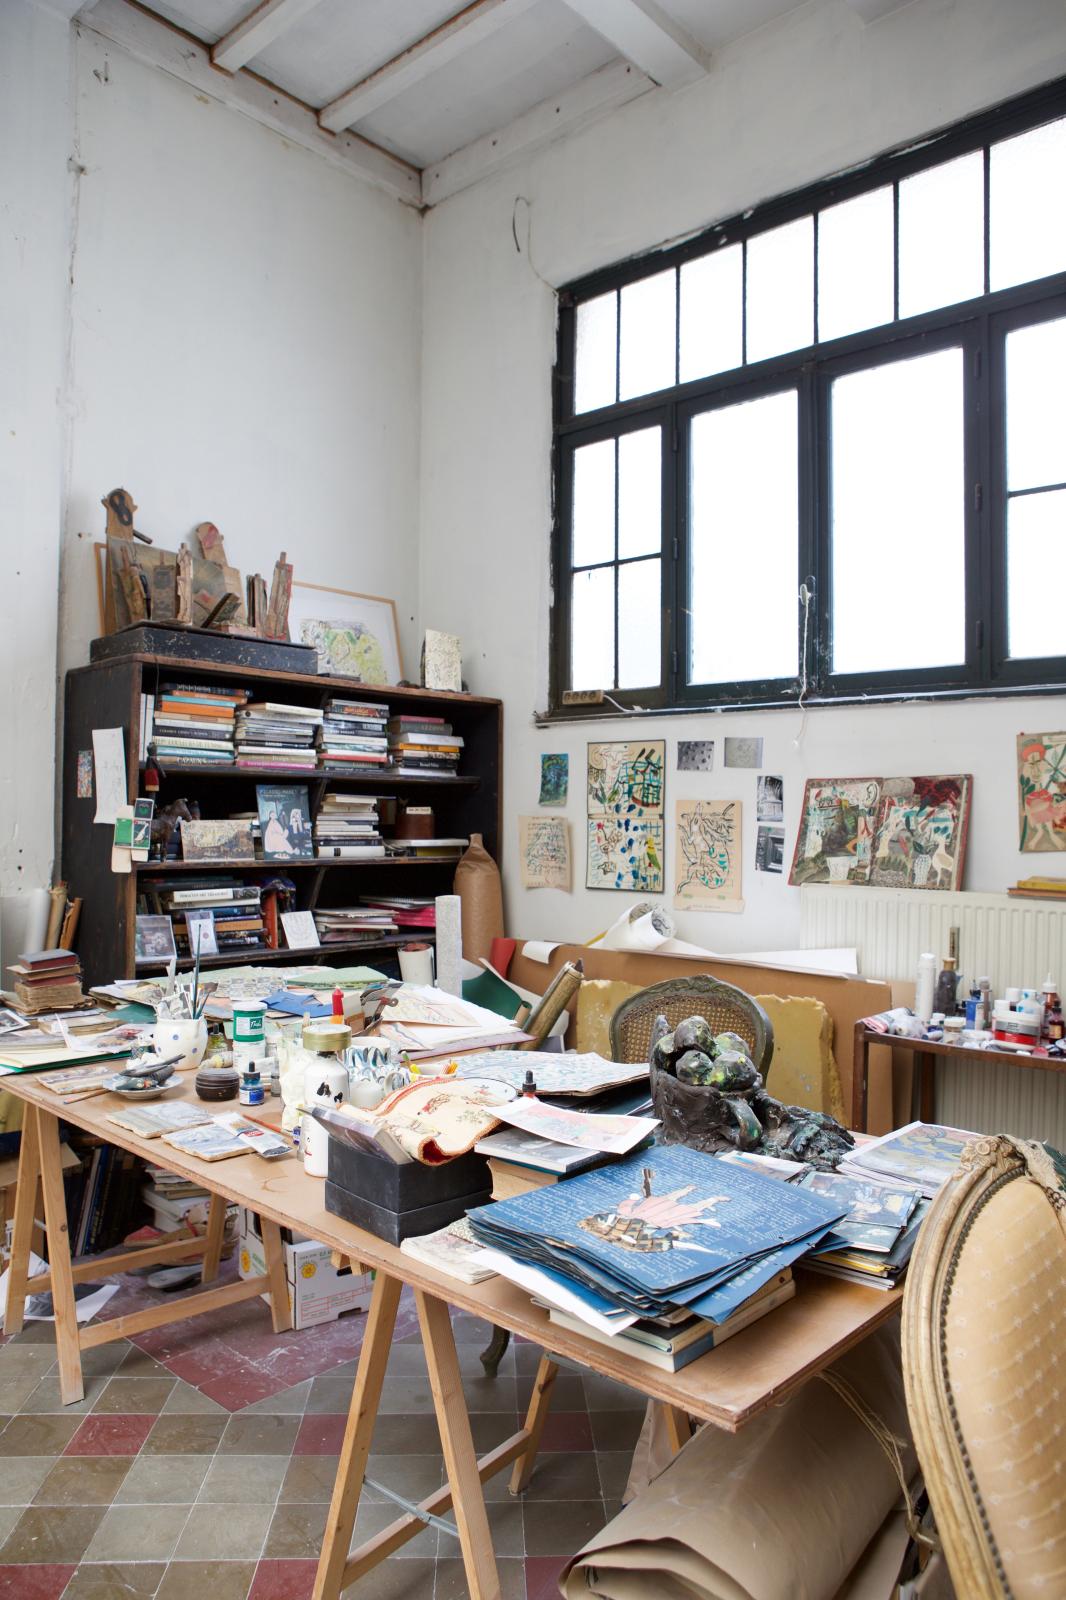 Partout dans l’atelier, les scrapbooks que Bela Silva compose et enlumine de peintures et d’encres.